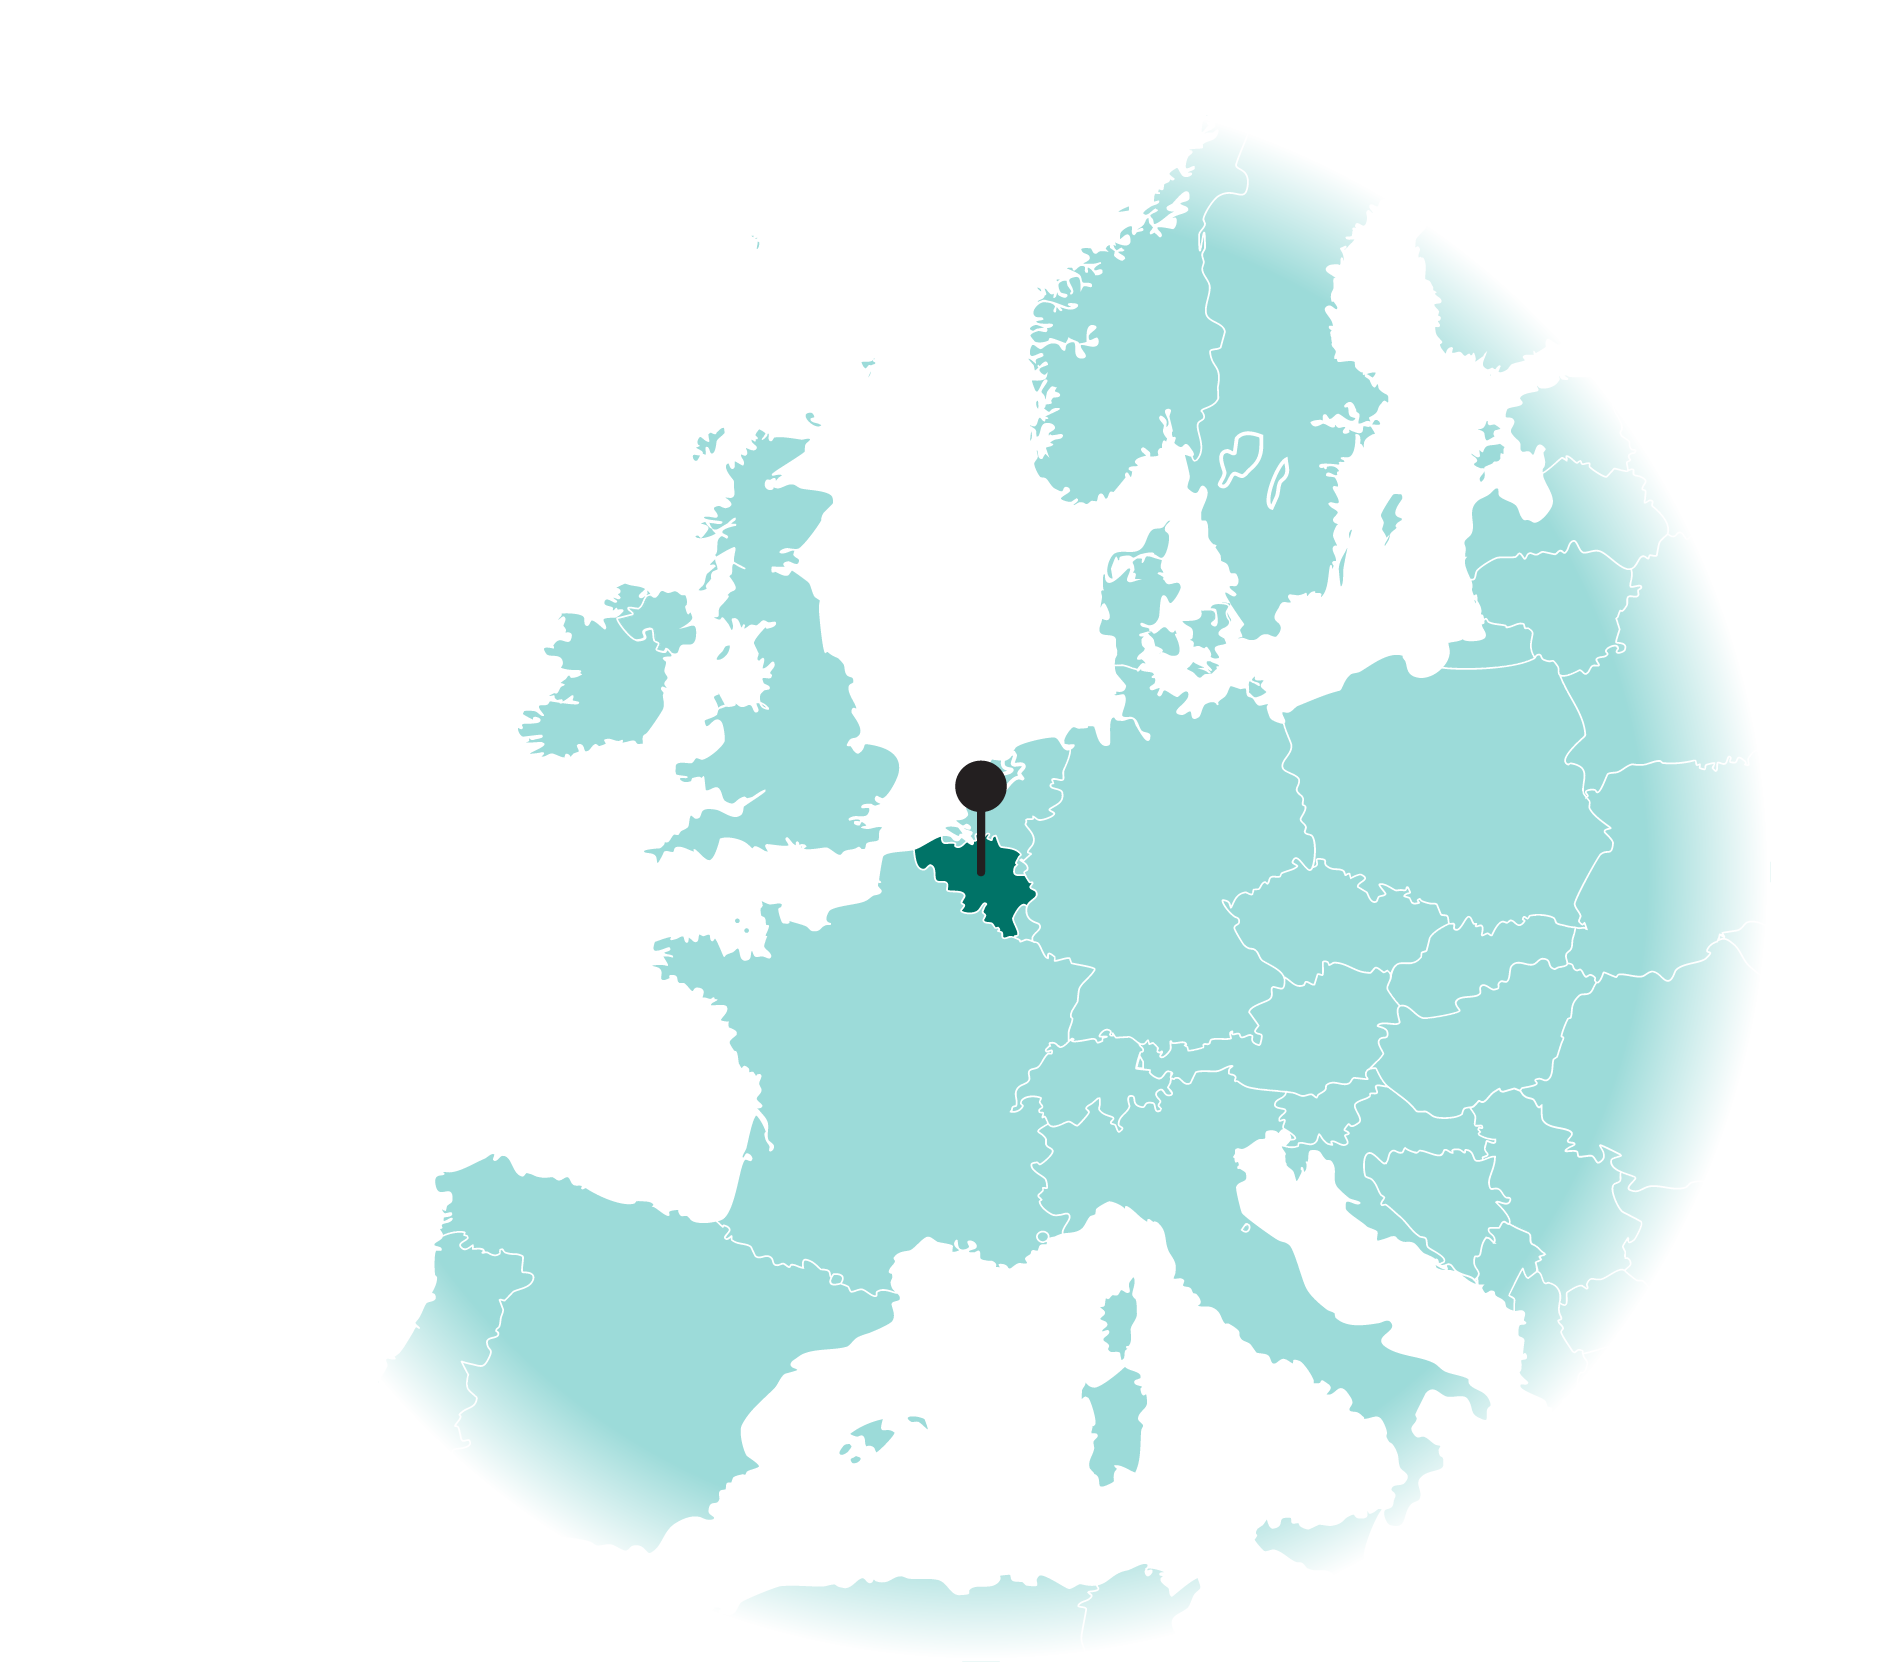 Lys Medical is located in Belgium, EU